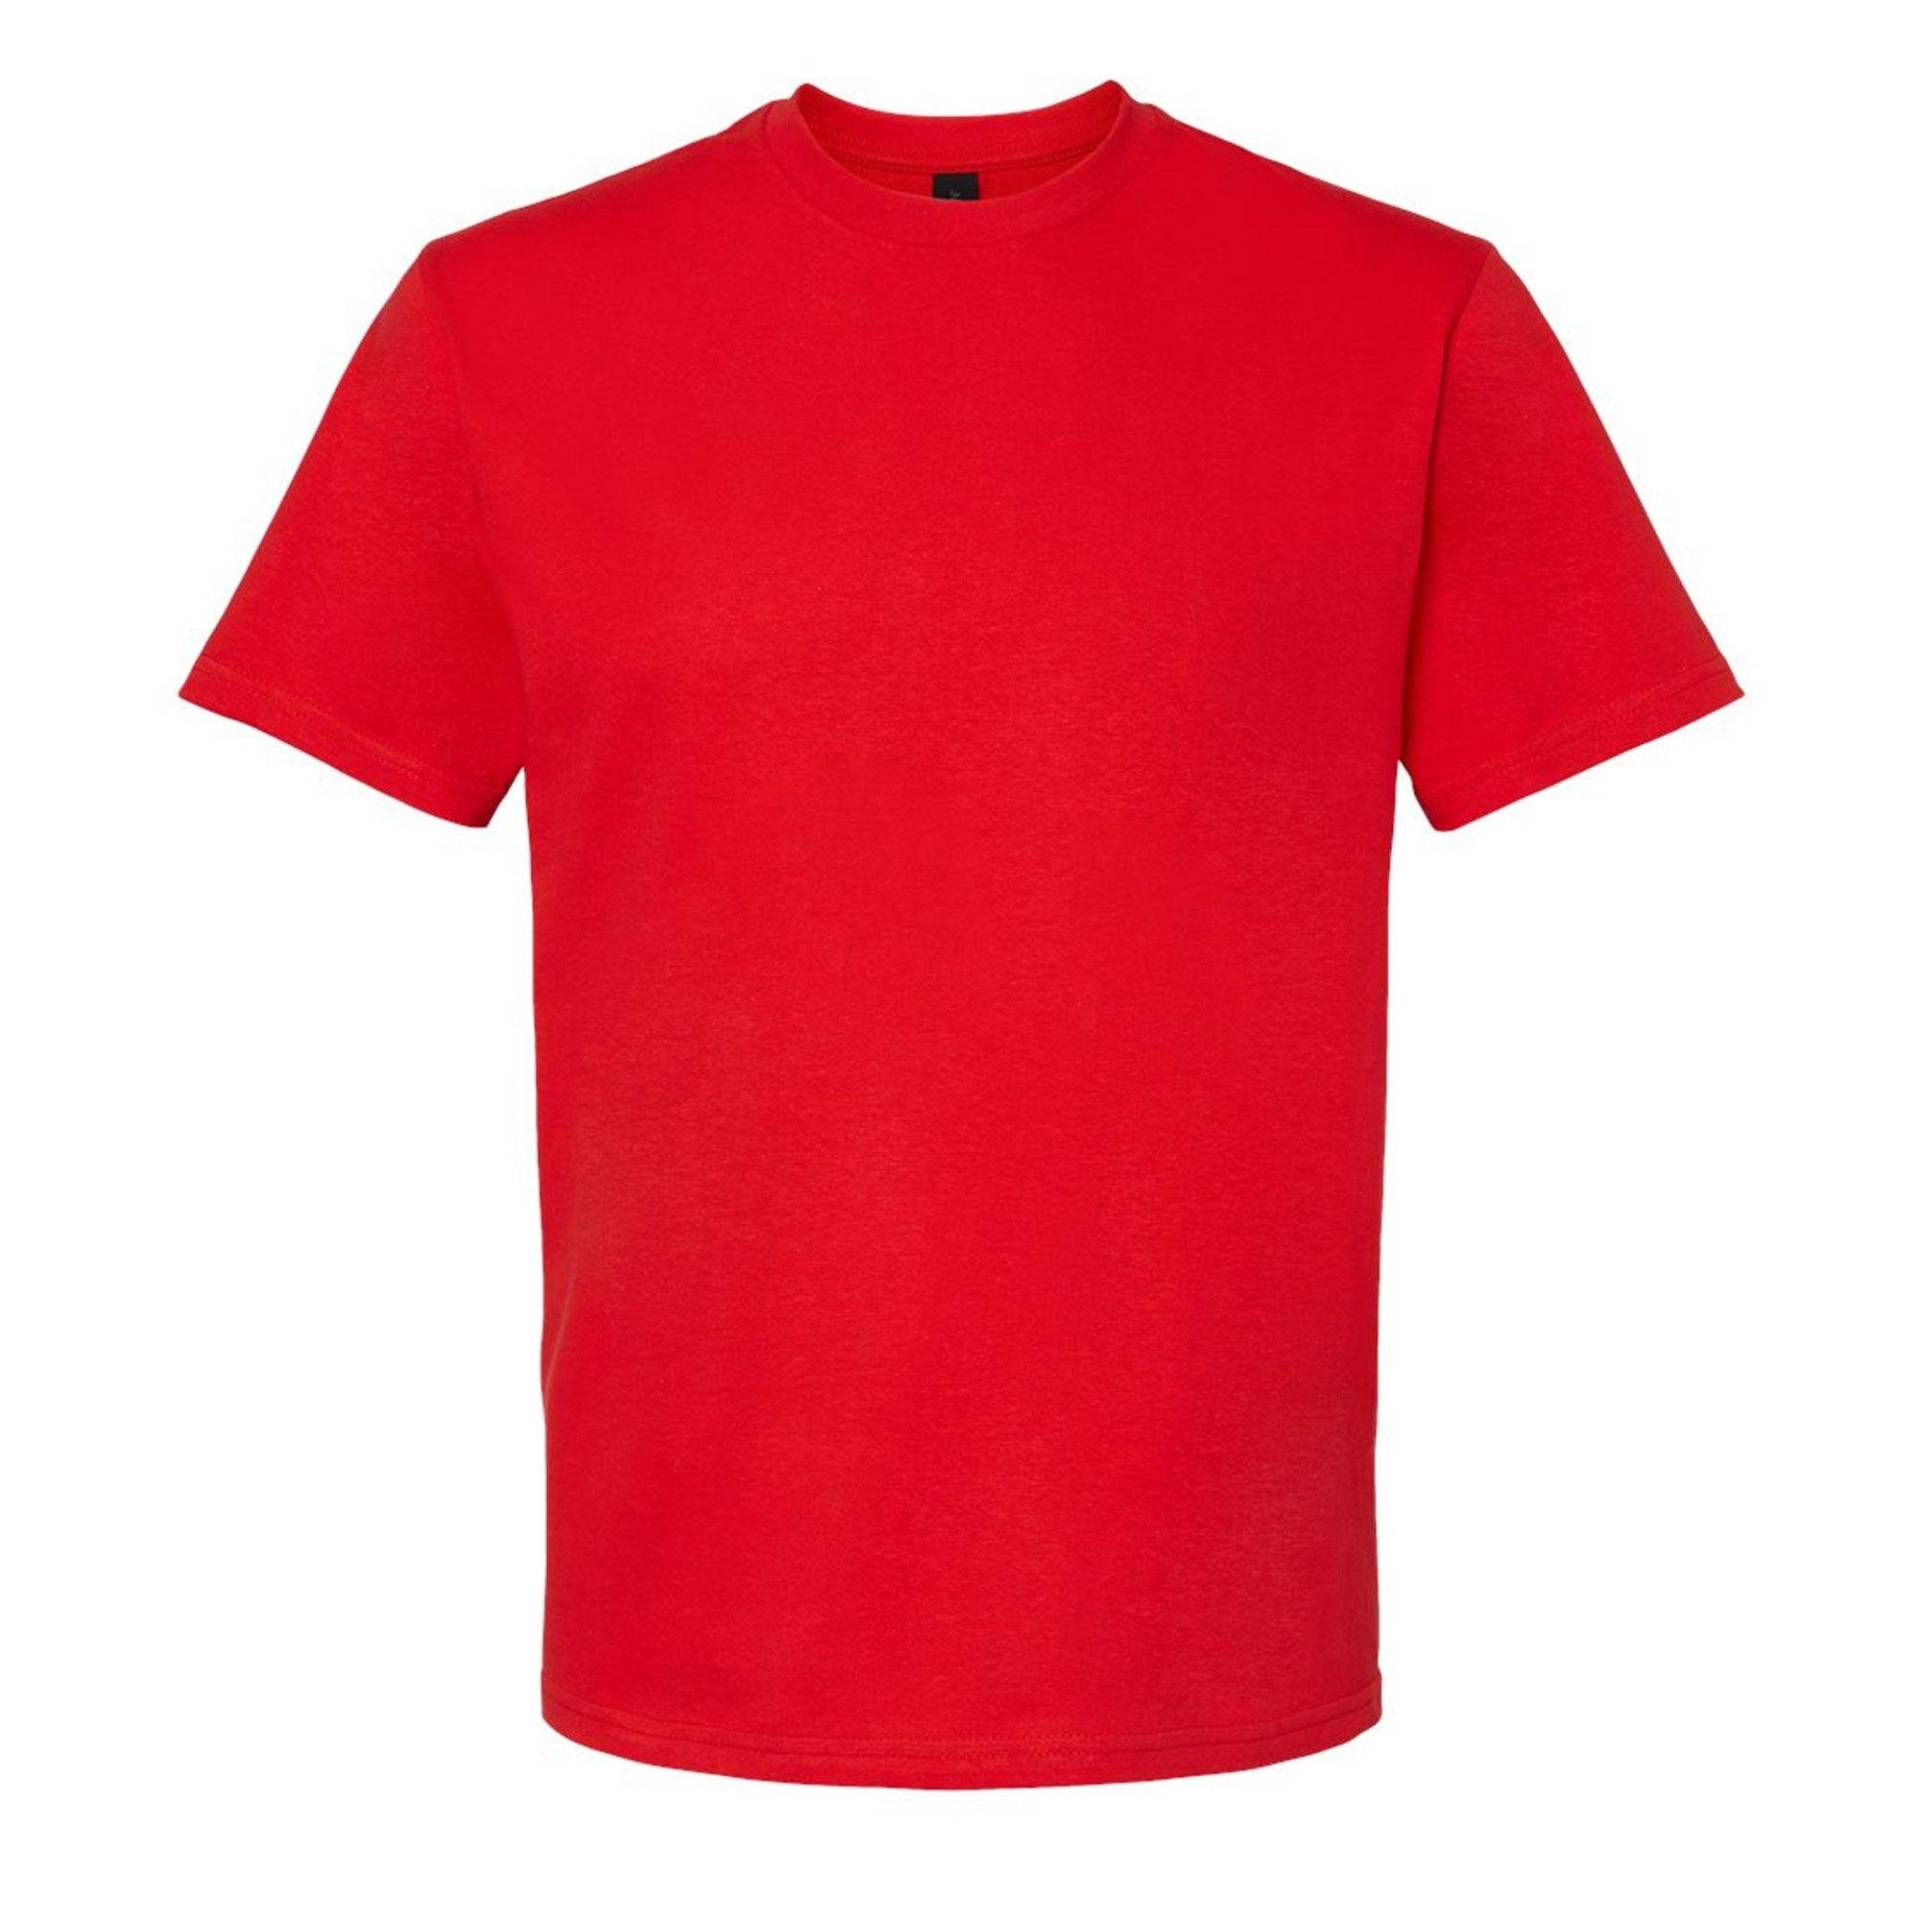 Softstyle Tshirt Damen Rot Bunt XL von Gildan